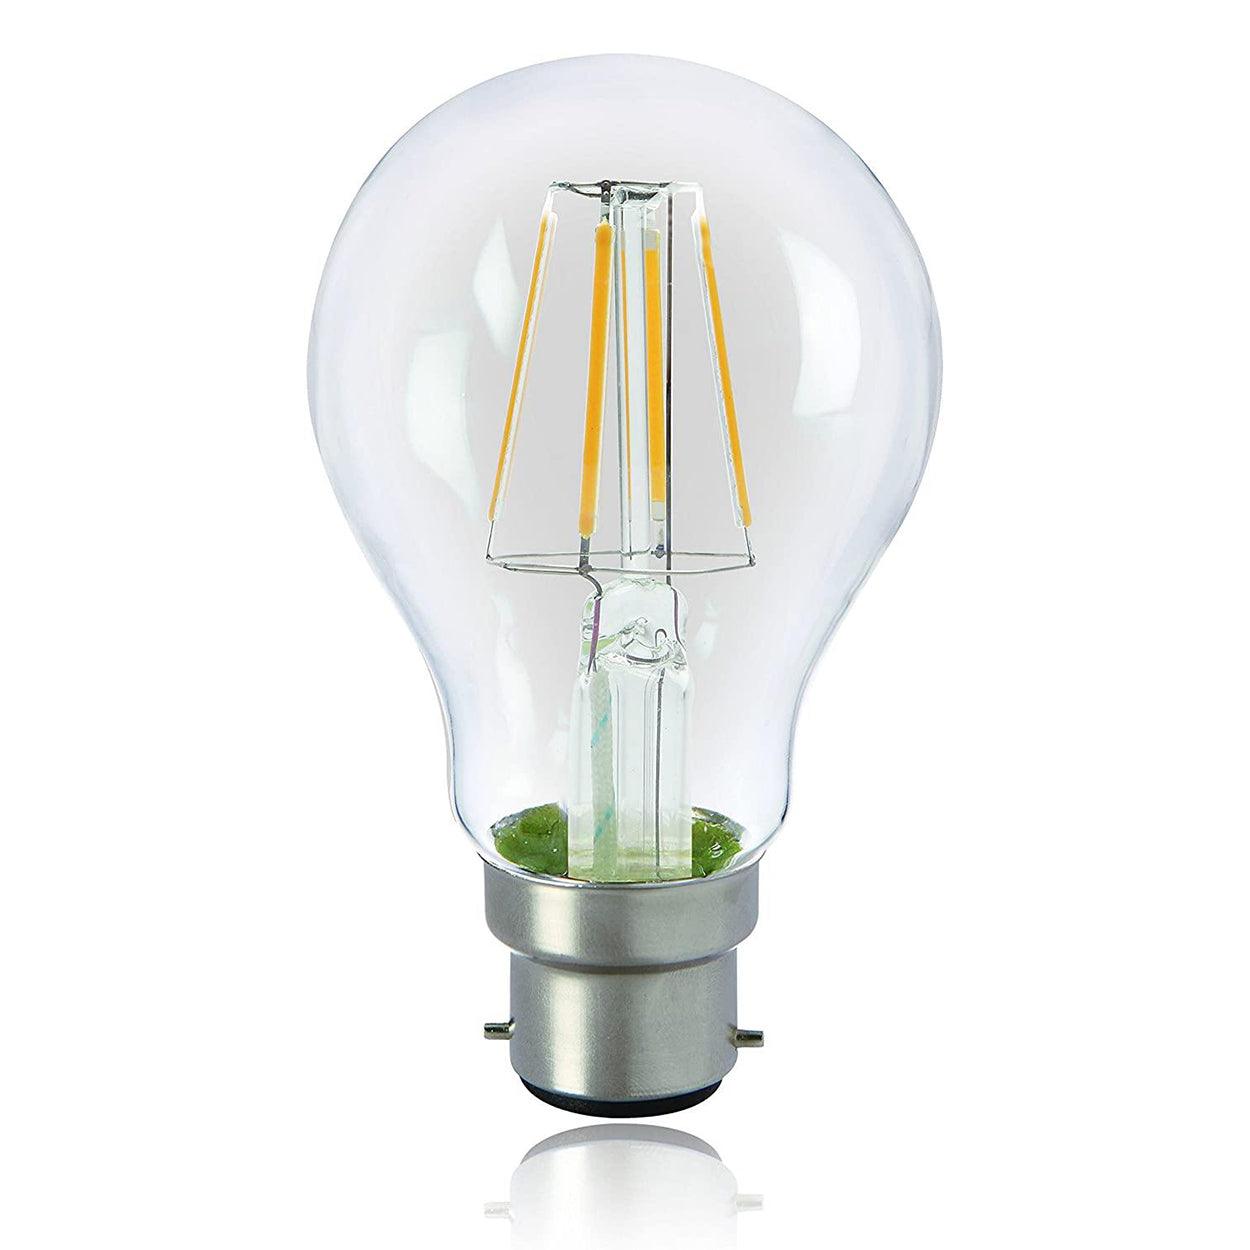 ANKUR GLO CLEAR A60 LAMP - Ankur Lighting